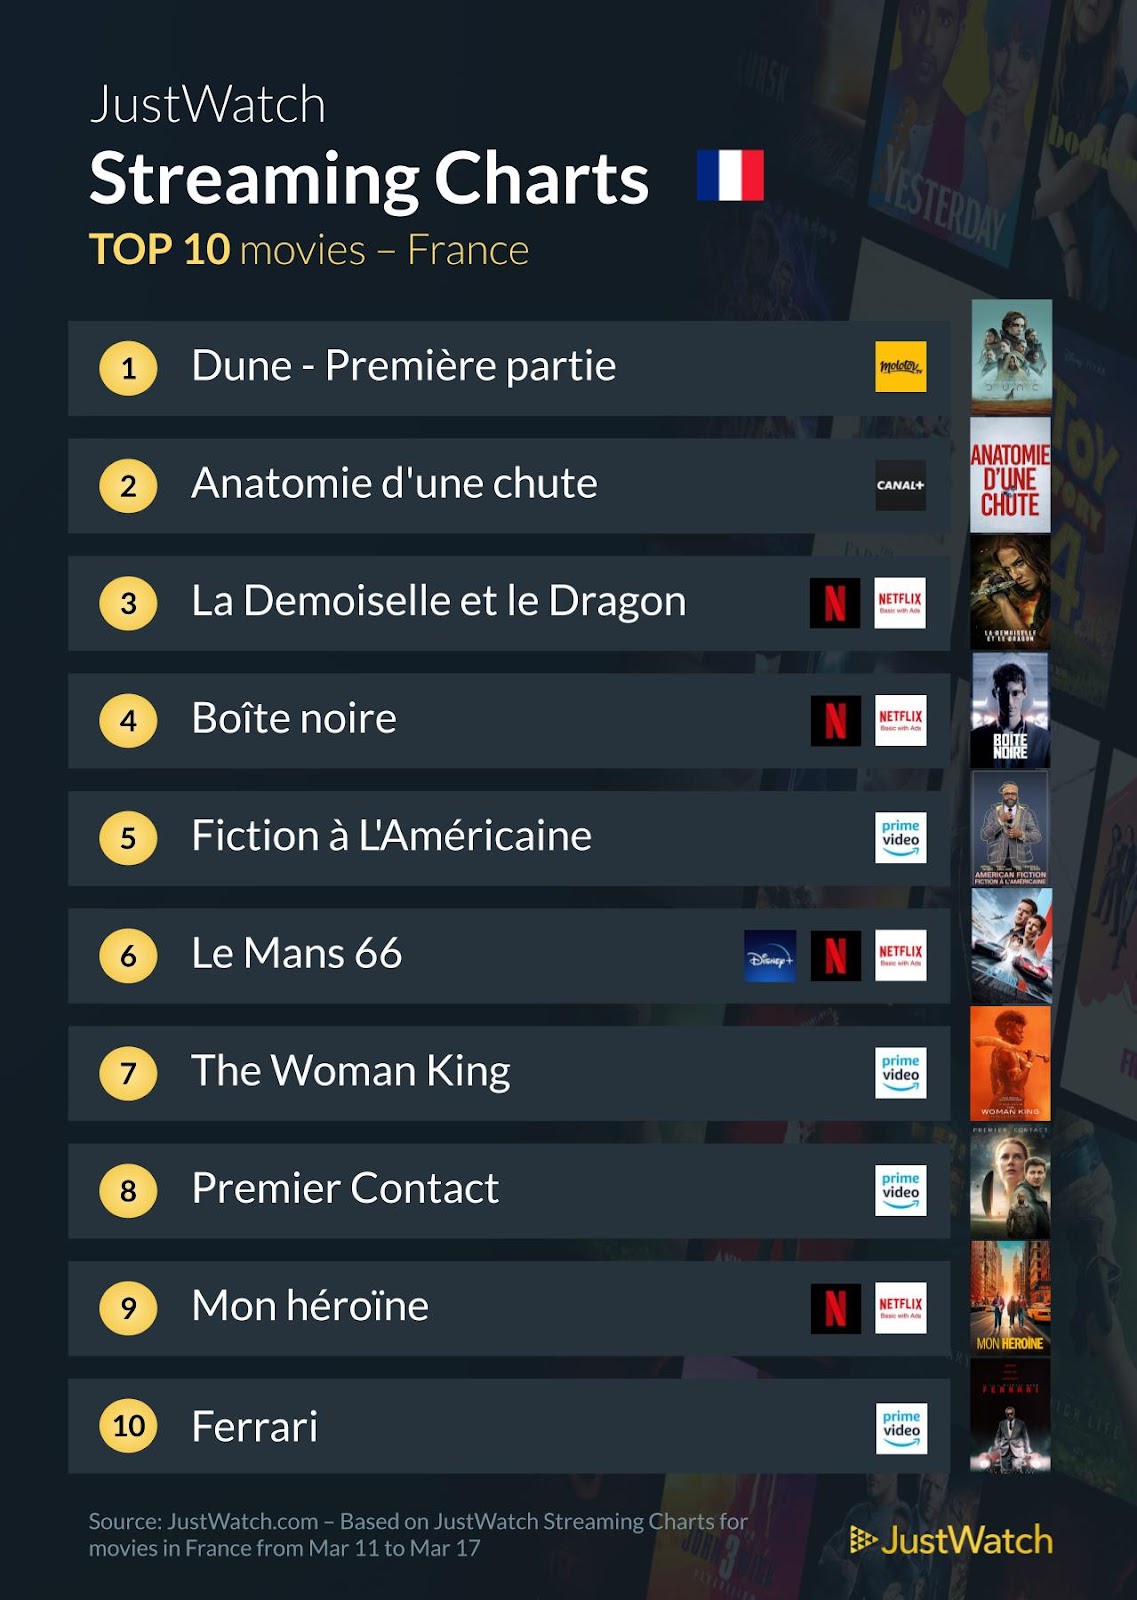 "Anatomie d'une chute", "La Demoiselle et le Dragon", "Shogun"... : Le top 10 des films et séries les plus populaires de la semaine